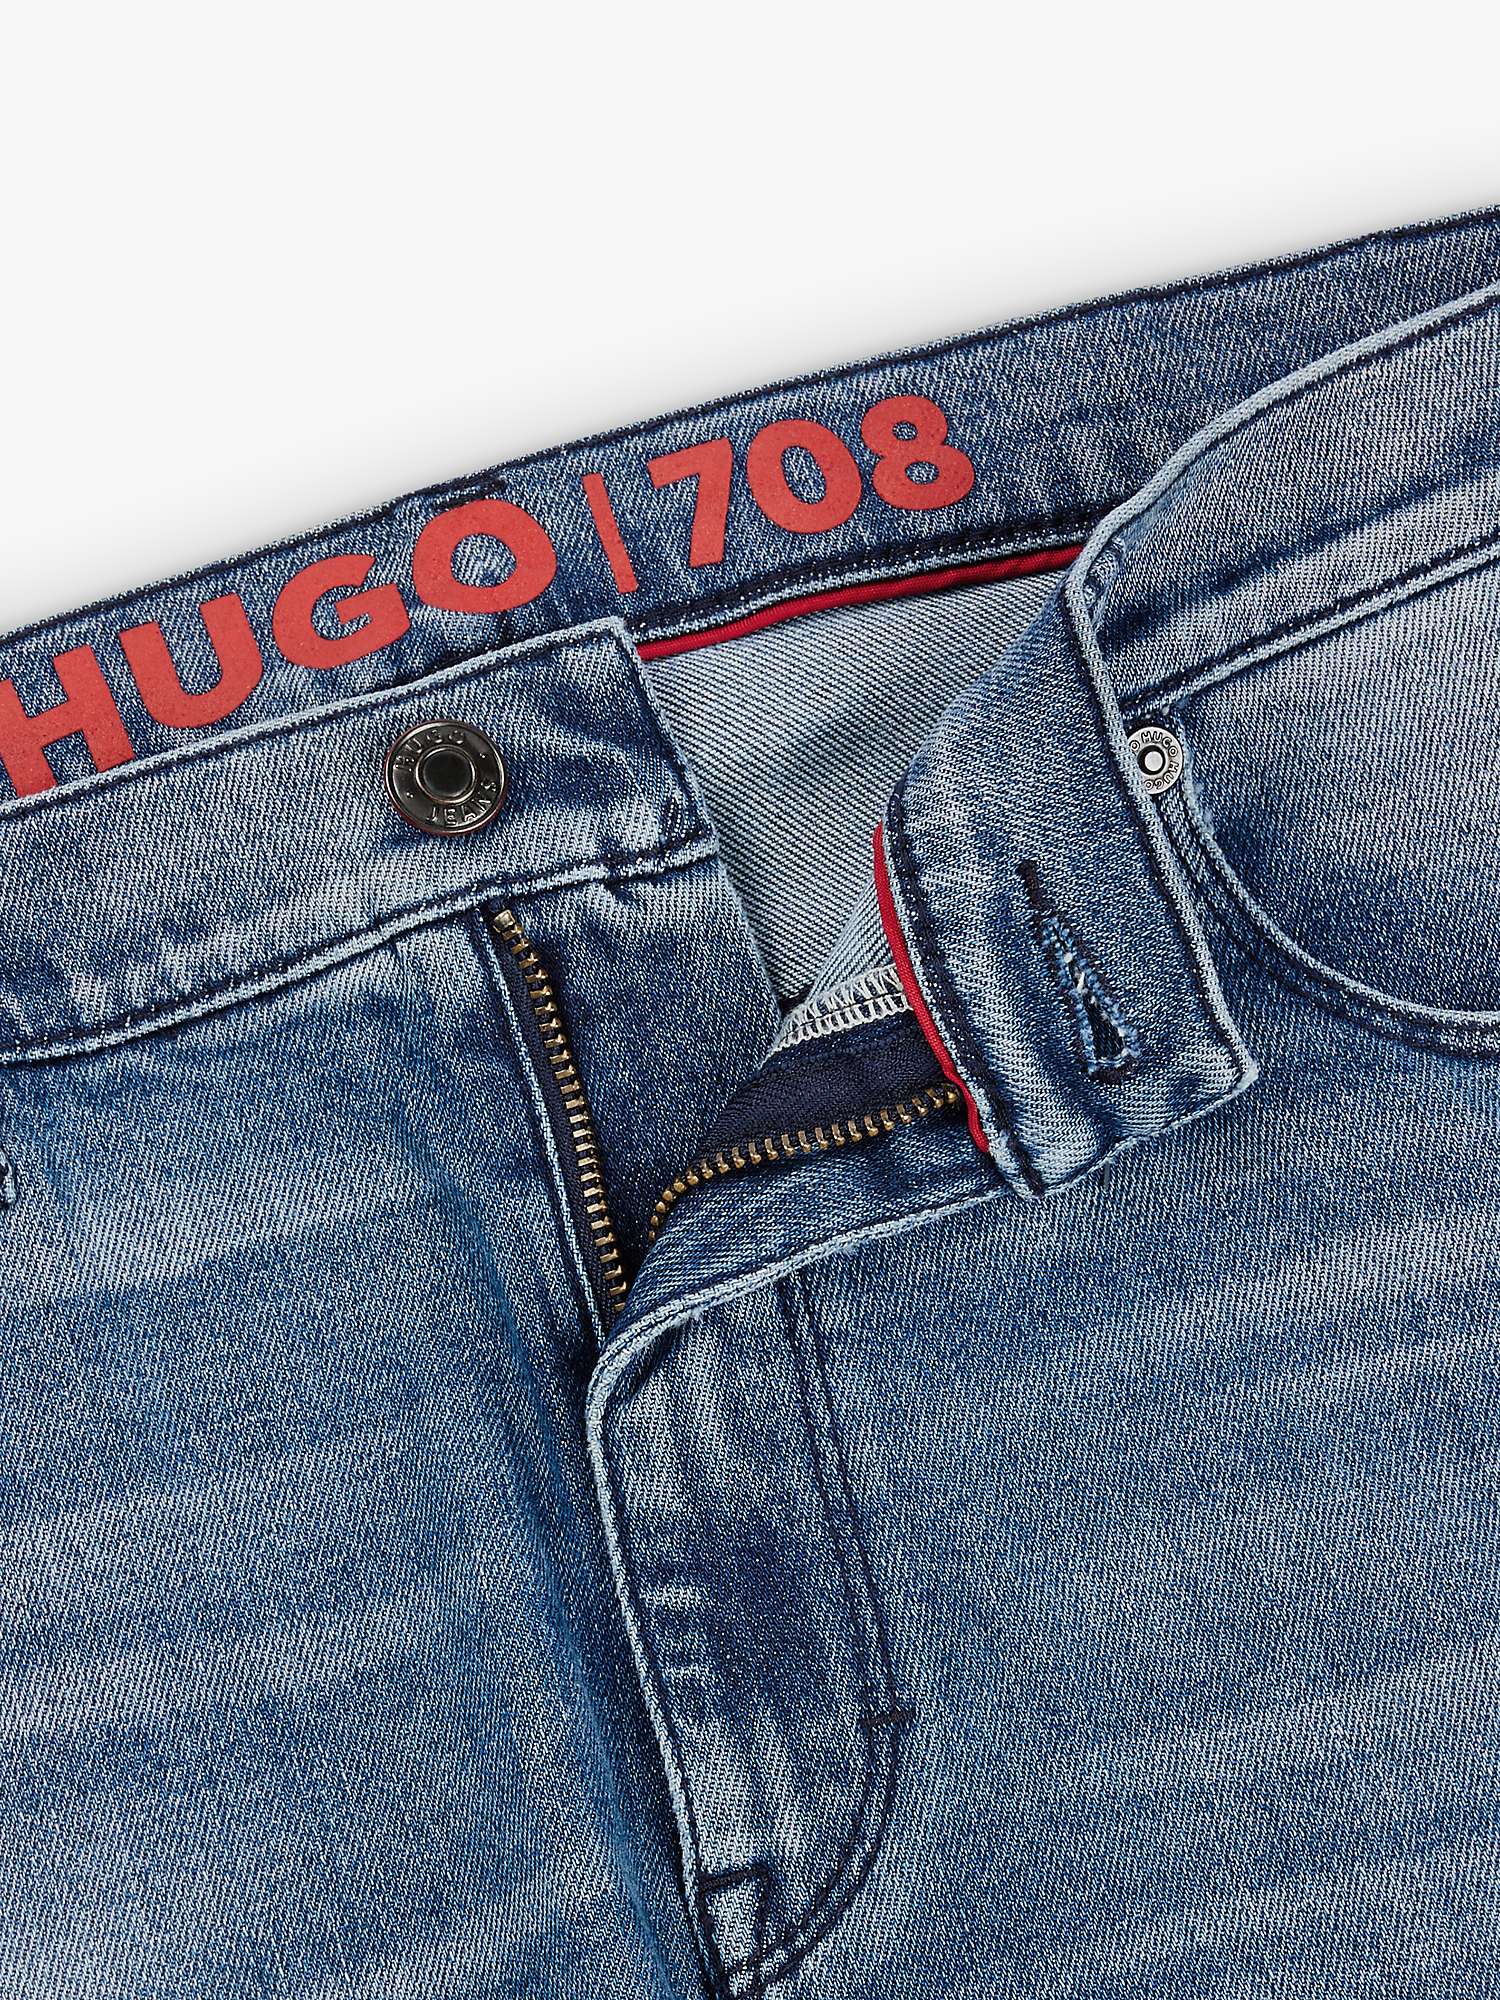 Buy HUGO 708 Slim Fit Jeans, Blue Online at johnlewis.com